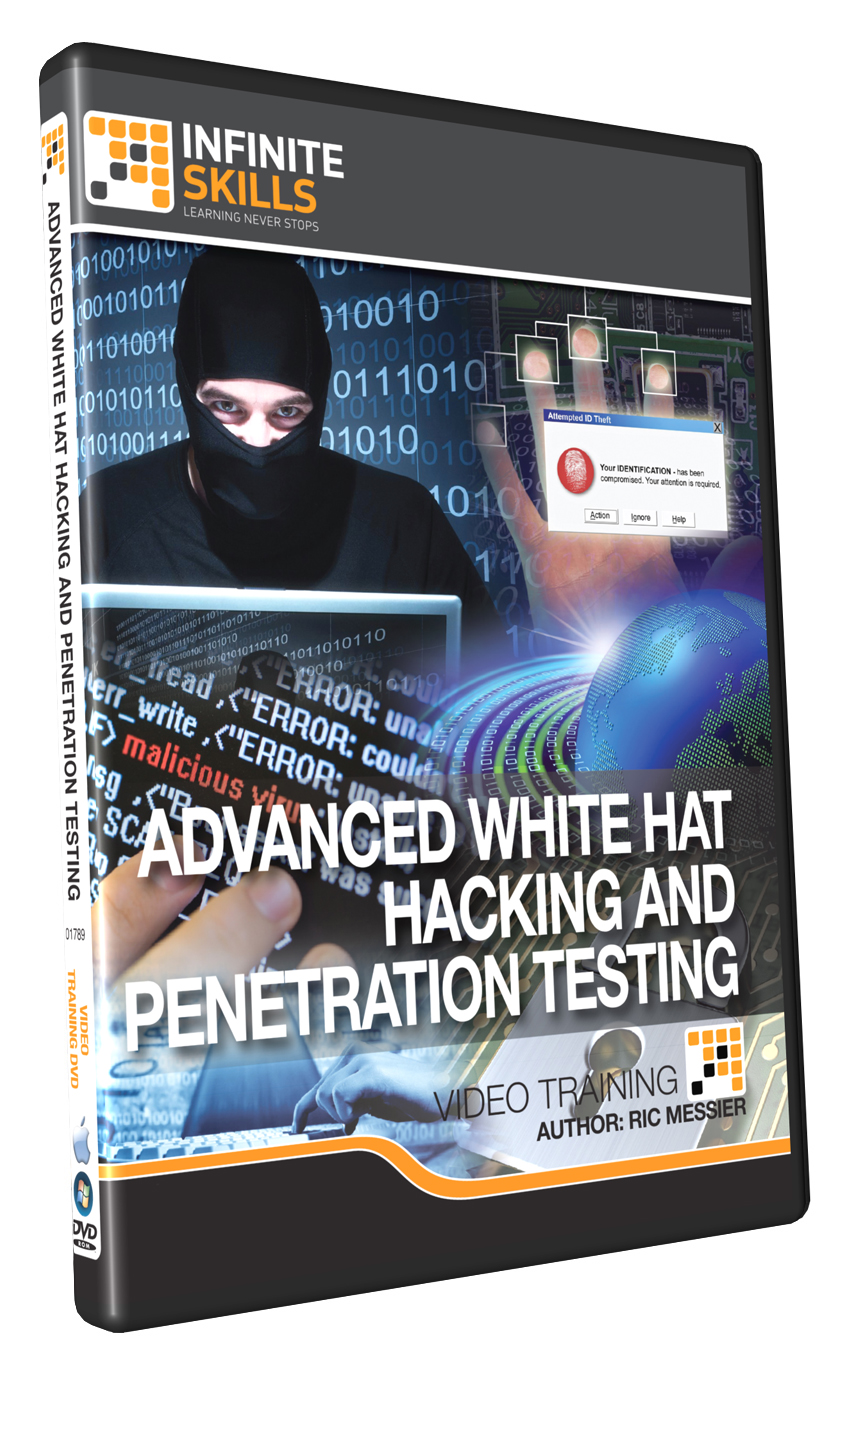 White Hat Hacking Tutorial